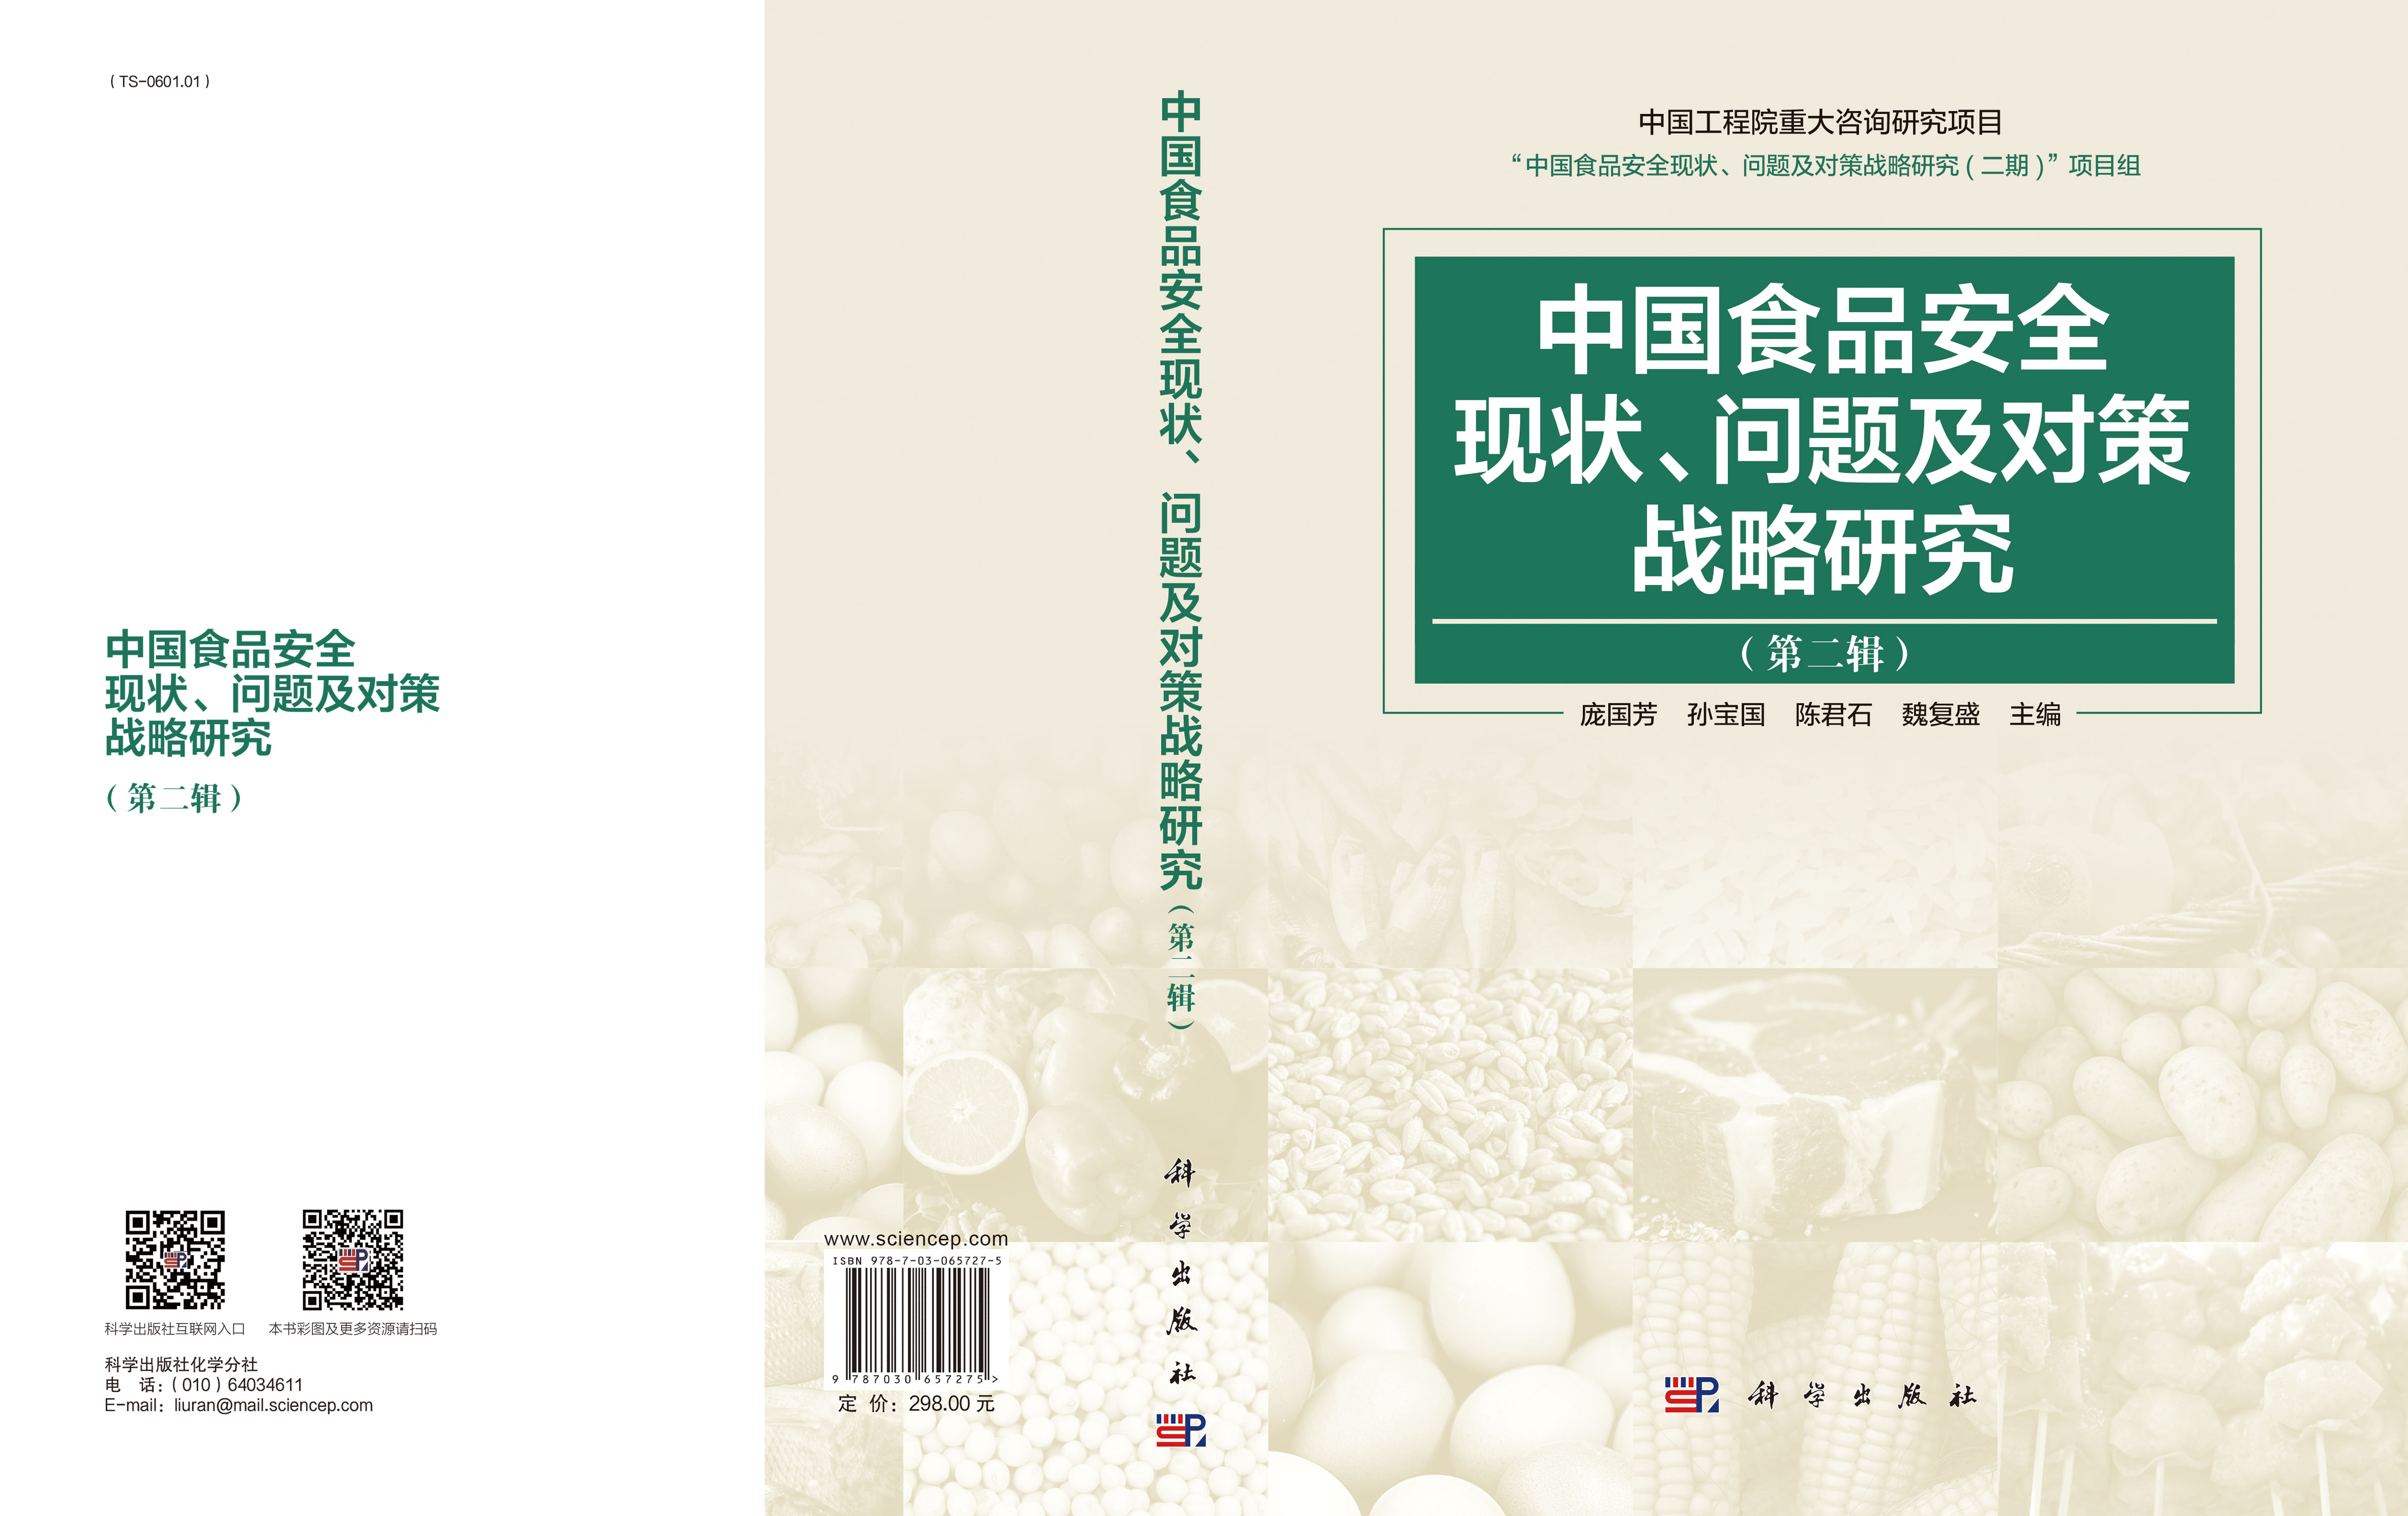 中国食品安全现状、问题及对策战略研究(第二辑)